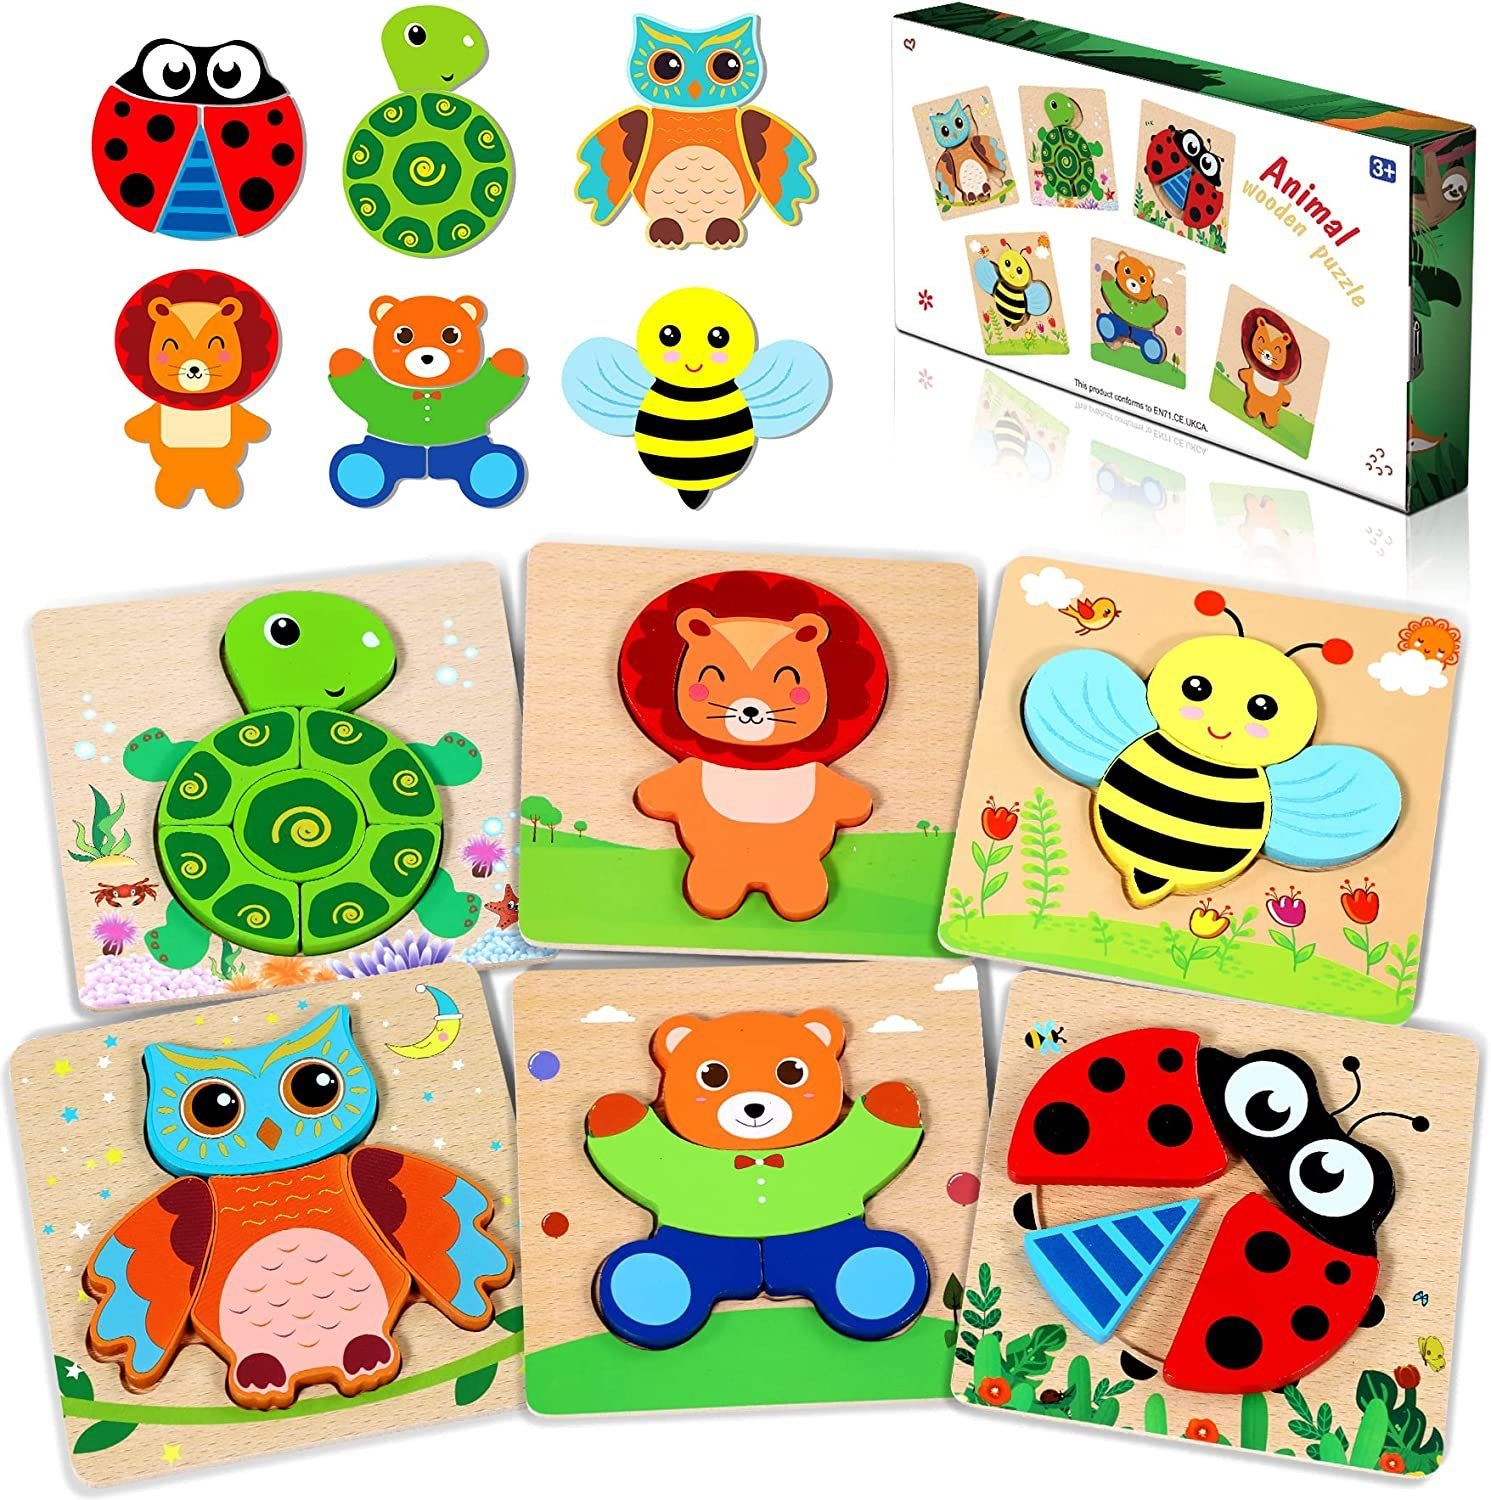 POPOLIC 3D-Puzzle spielzeug puzzle, 6pcs kinder holzpuzzle, 6 Пазлиteile, Verbesserung der Lernfähigkeit Ihres Kindes